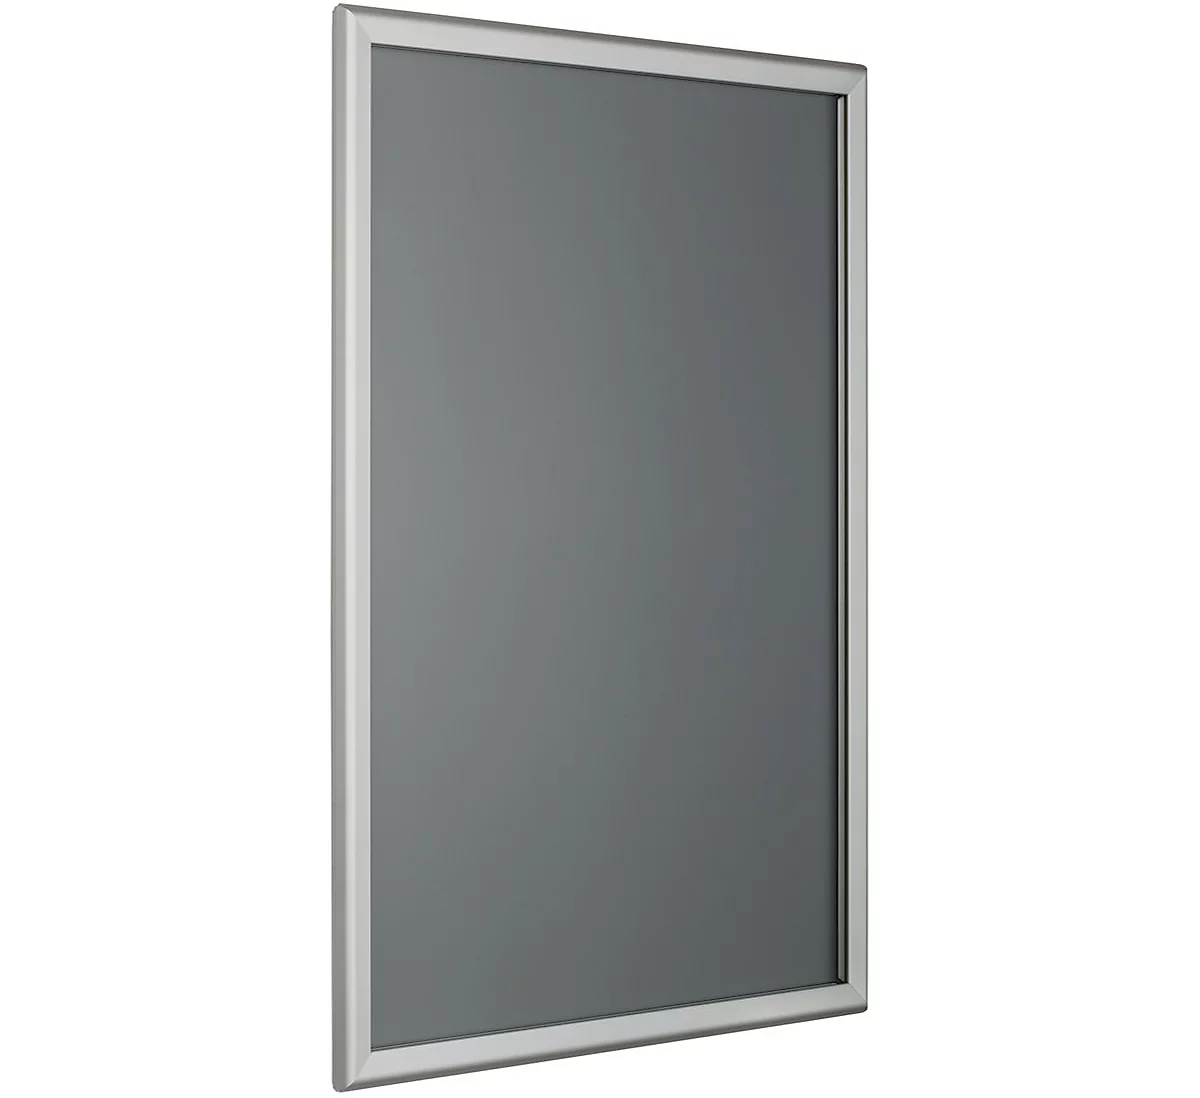 Marco intercambiable, esquinas angulares, perfil de aluminio anodizado plata, DIN A1, 594 x 841 mm